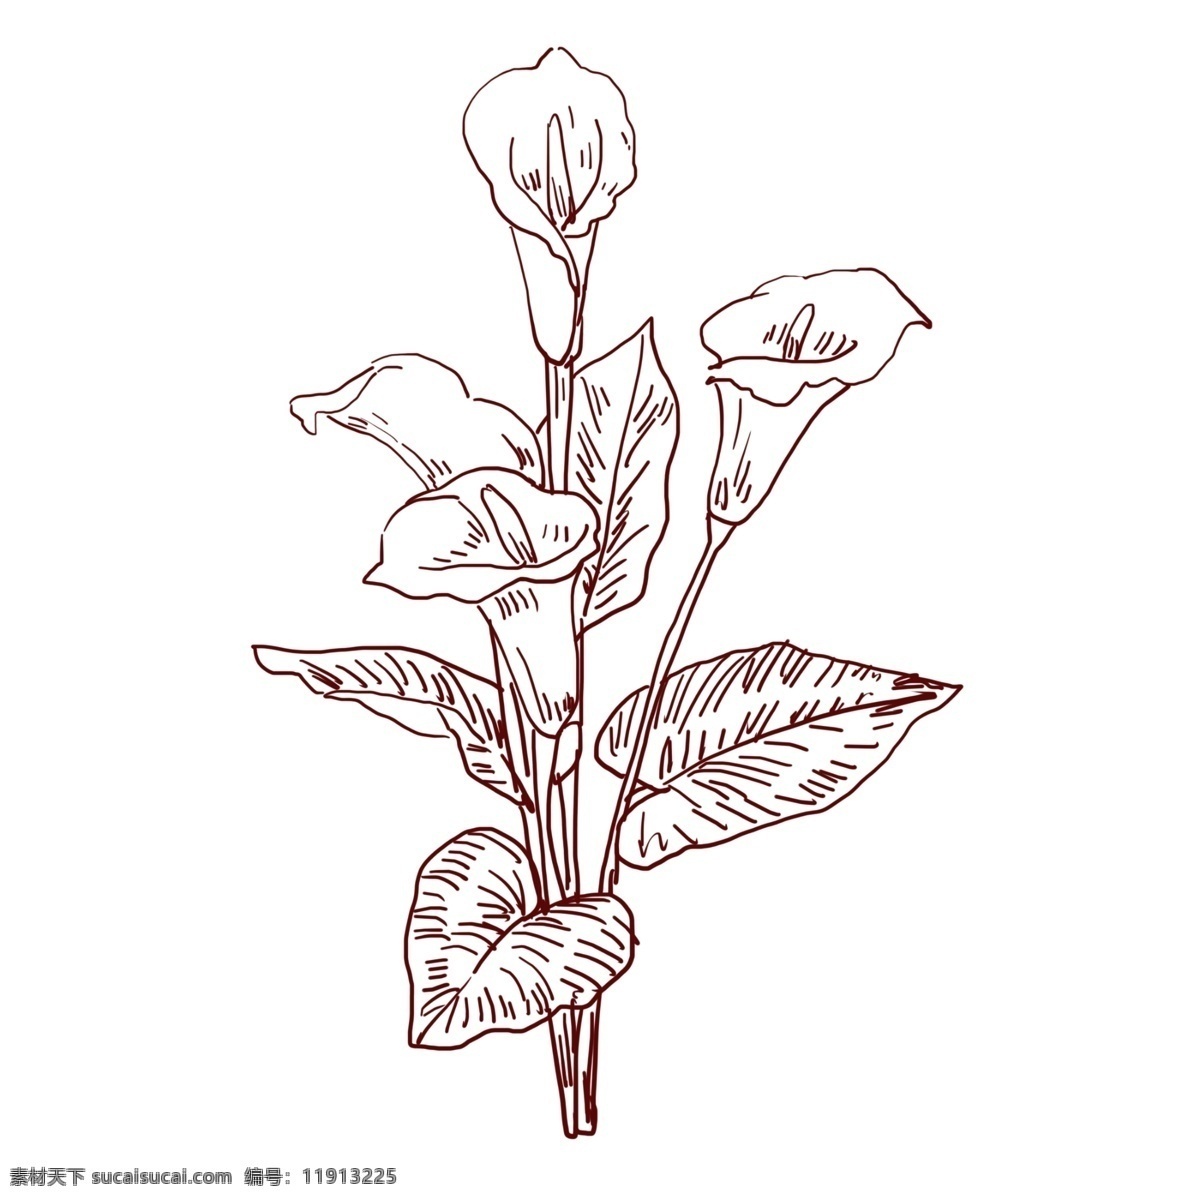 手绘 线描 花卉 插图 一帆风顺花卉 绿叶 线描植物 植物插画 植物插图 手绘花卉 绘画插图